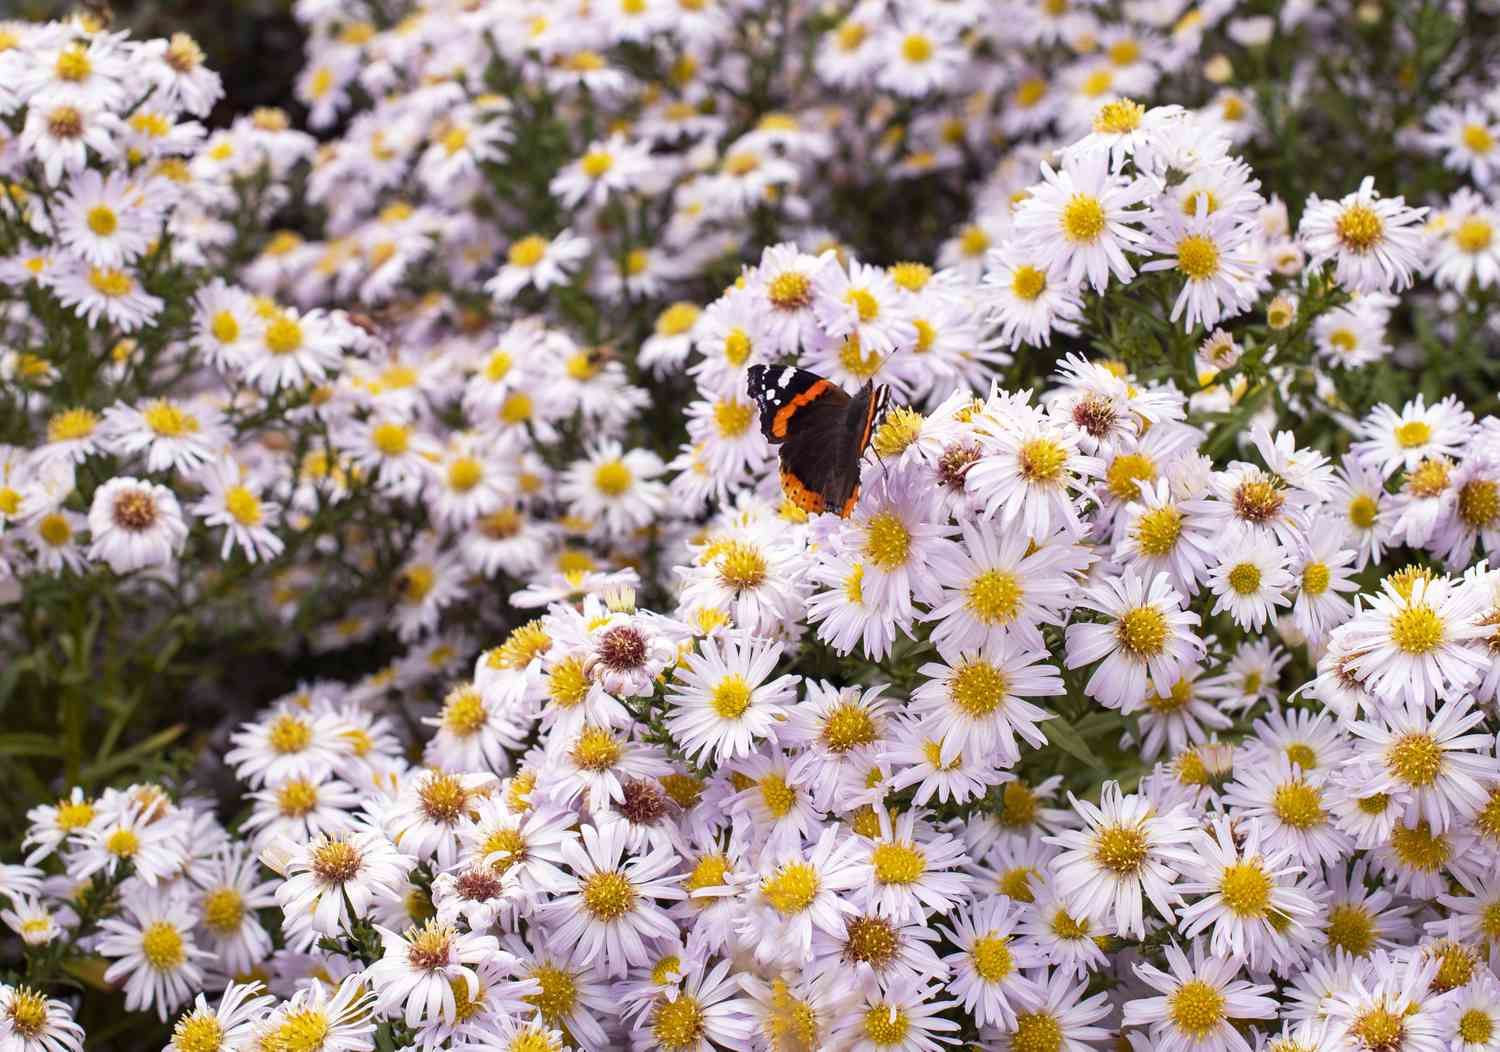 Neuengland-Aster mit weißen, gänseblümchenähnlichen Blüten und Schmetterling an der Spitze